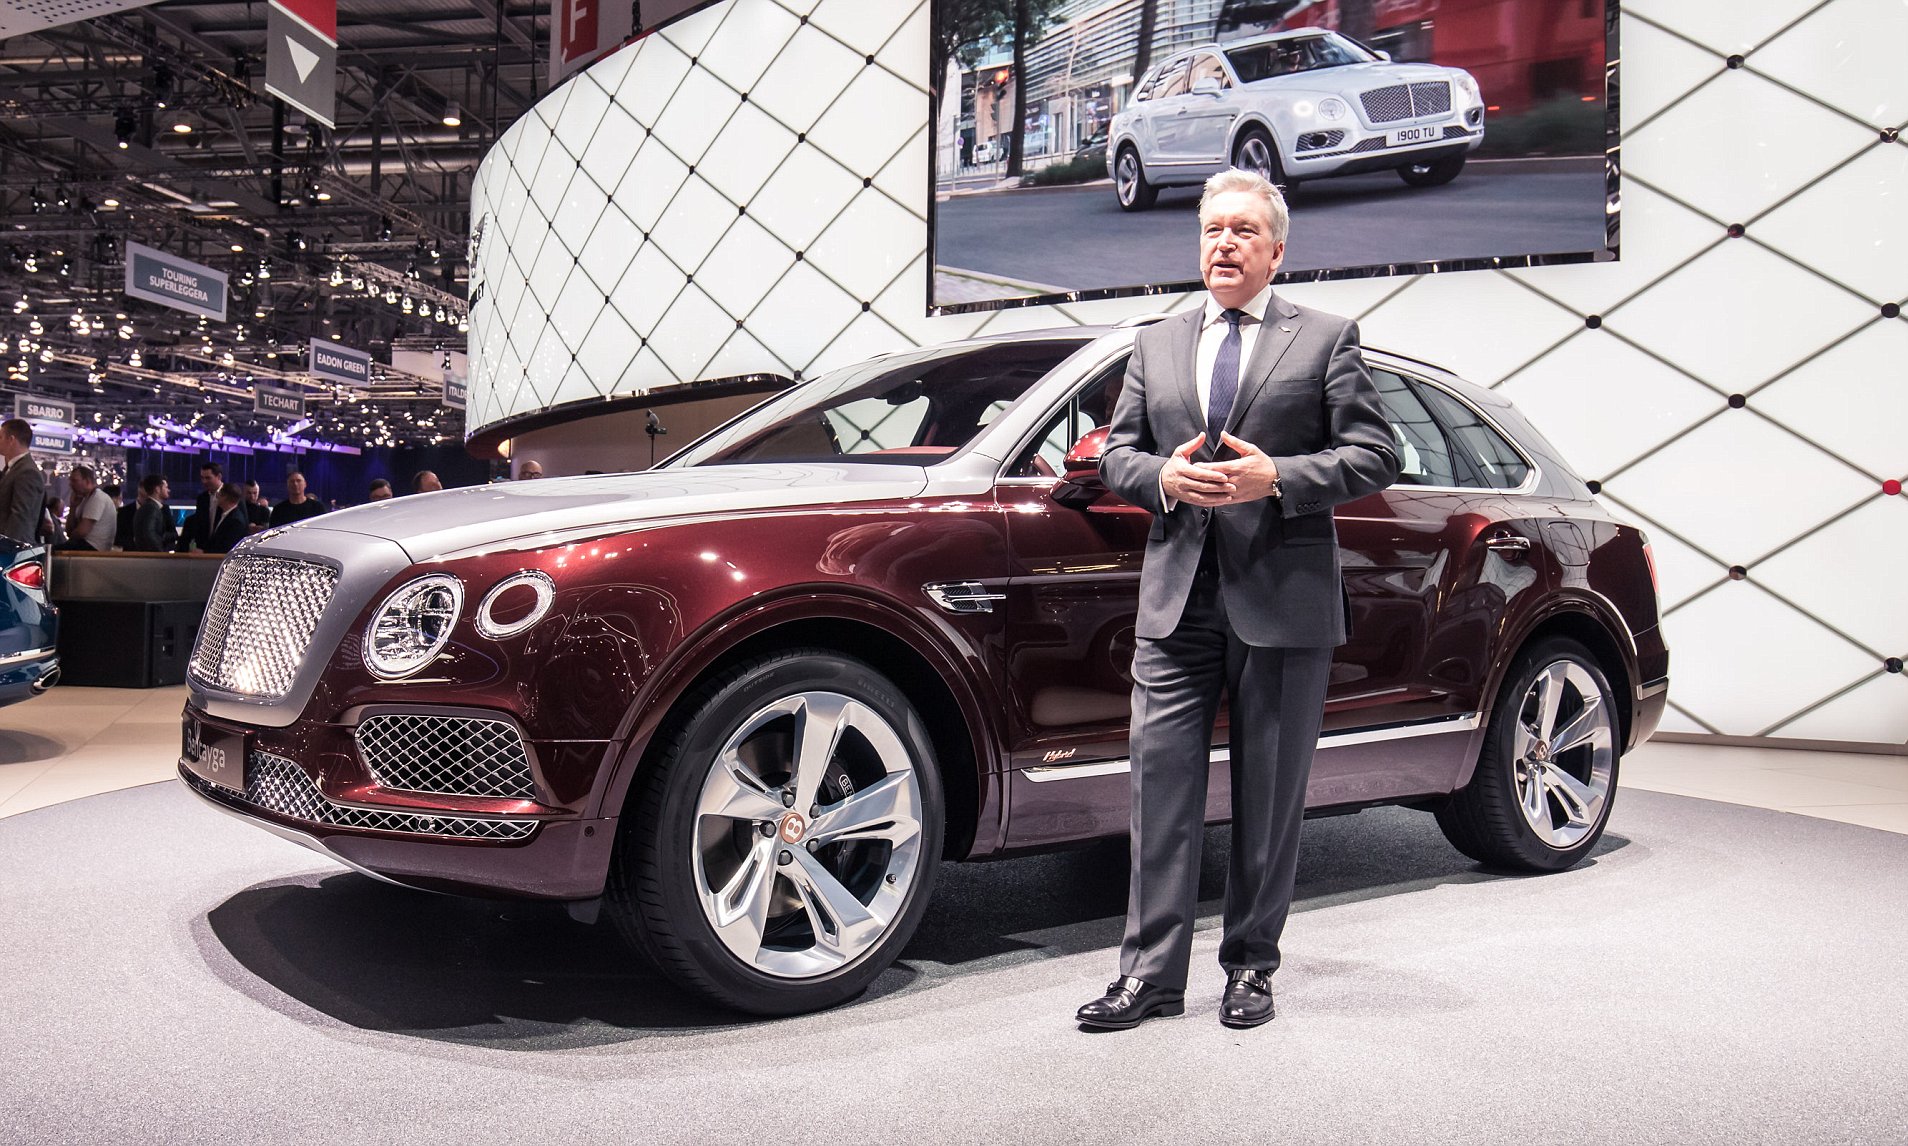 Tương lai của Bentley sẽ là xe điện 4ae3c91c00000578-0-image-a-80-1523038776707.jpg